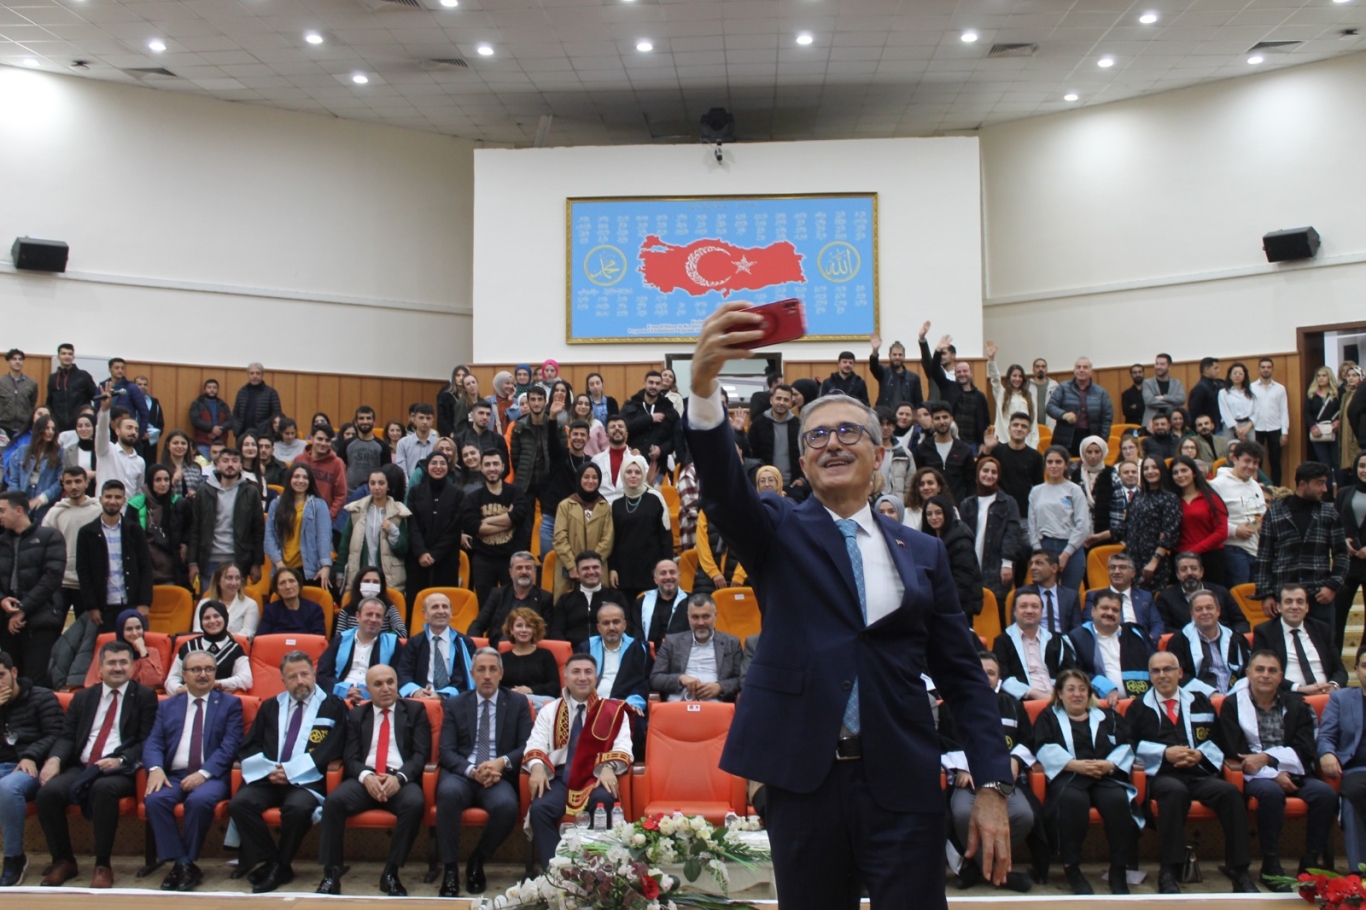 Başkan Demir’in Katılımıyla Akademik Yükseltme ve Atama Töreni Düzenlendi